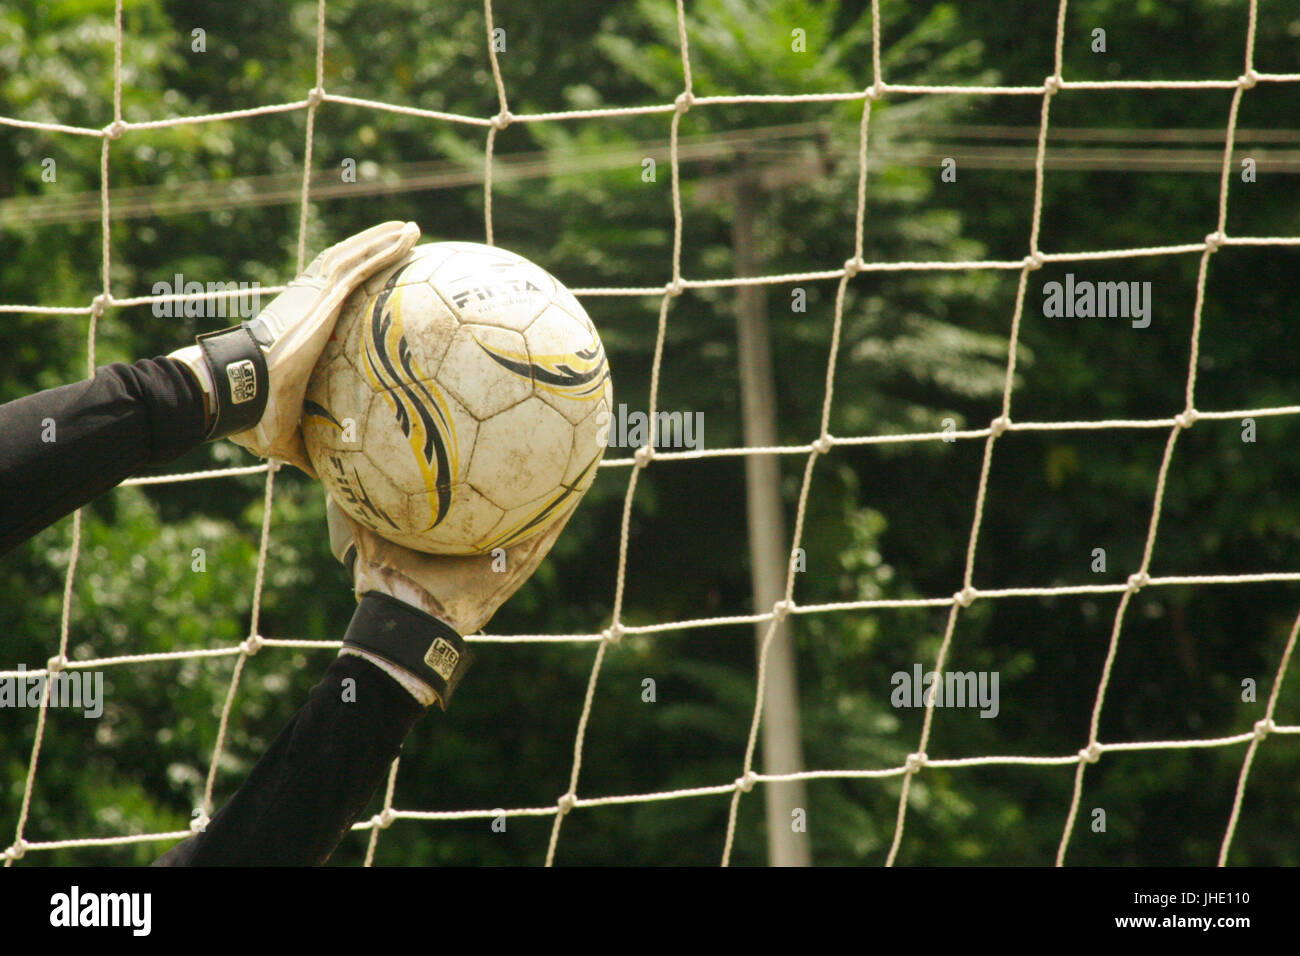 Ball, Goal, Field, Net, Player, Belém, Pará, Brazil Stock Photo